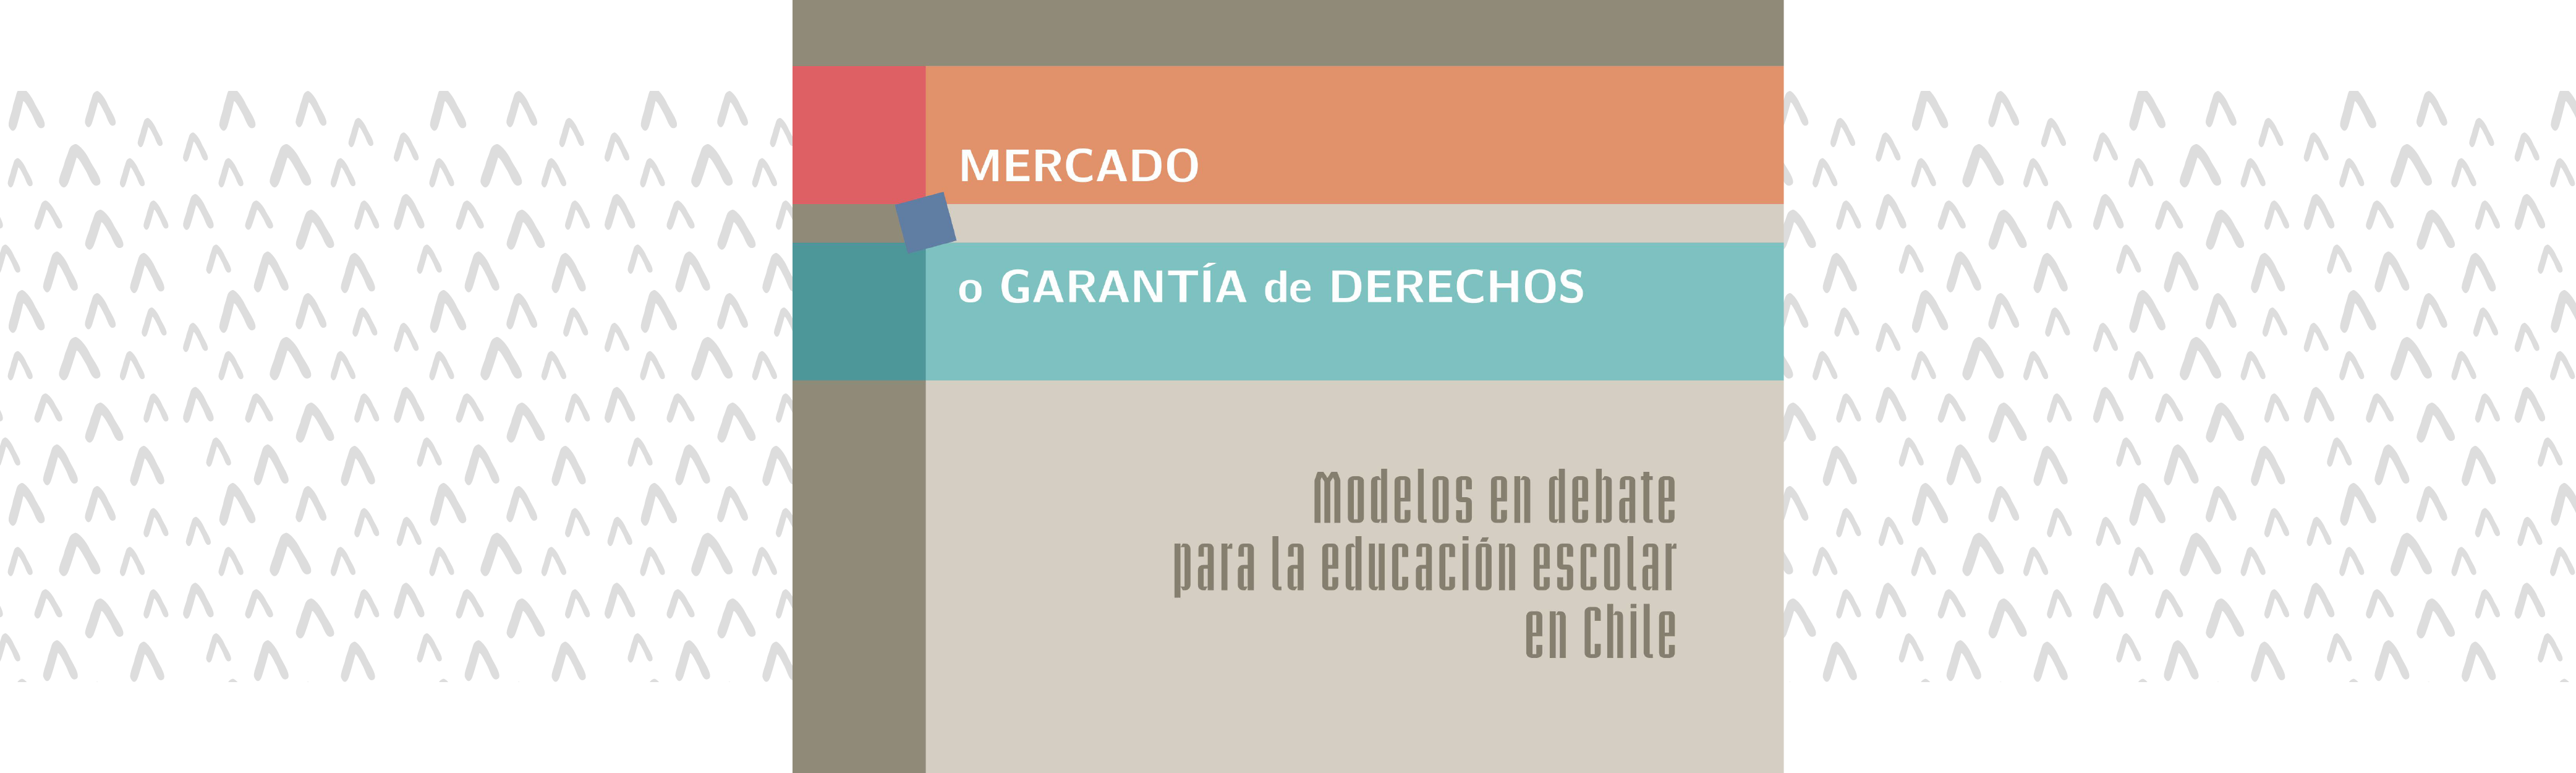 	Mercado o garantía de derechos. Modelos en debate para la educación escolar en Chile